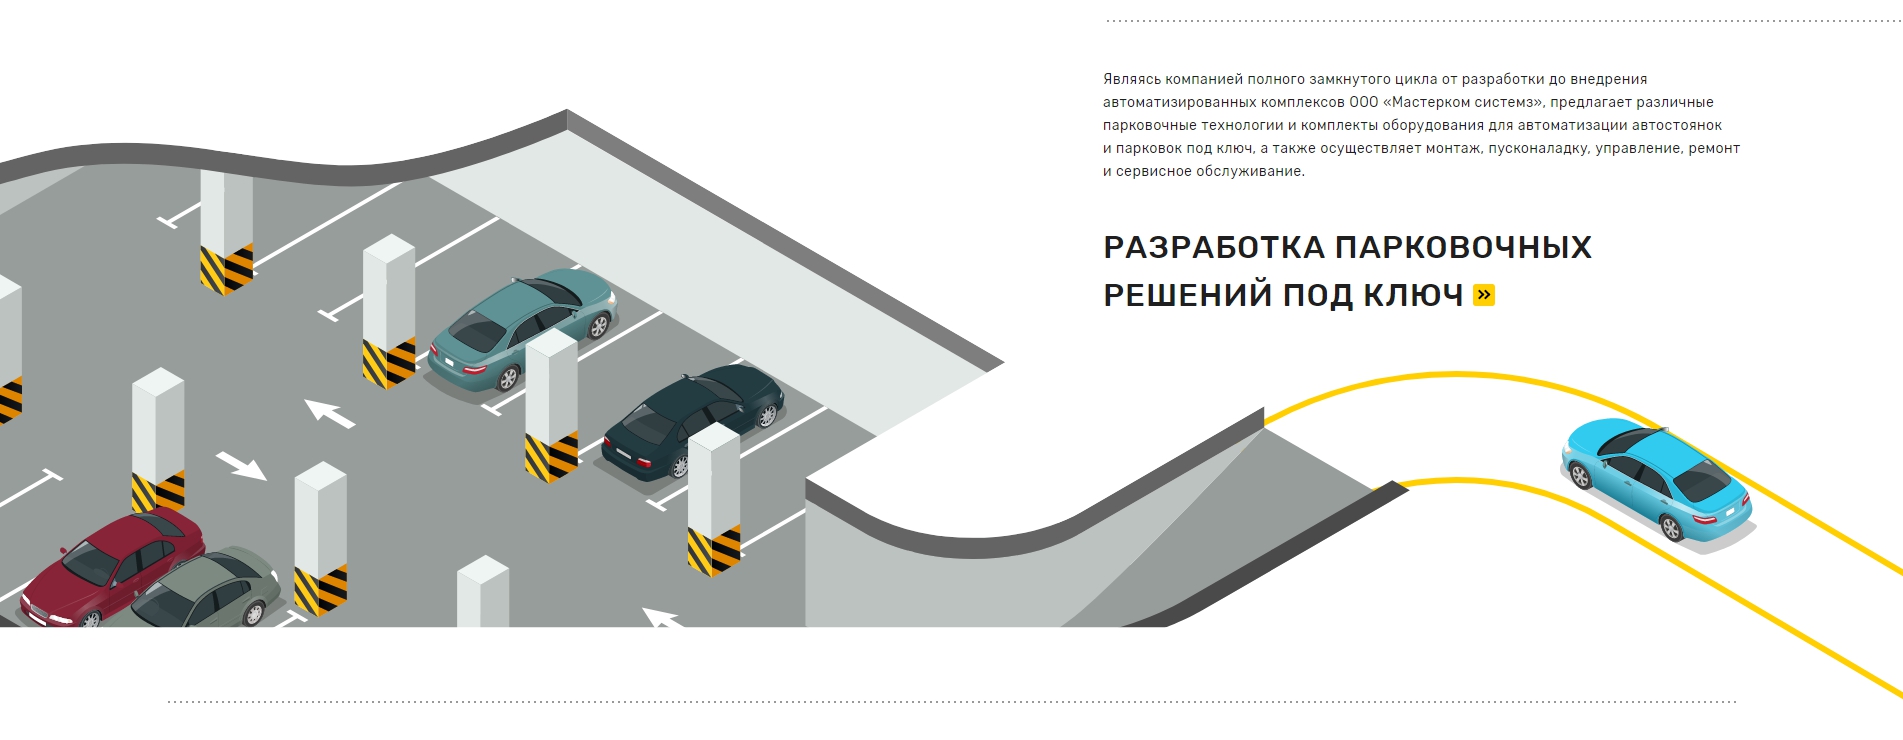 mscom — технологии для автоматизации автостоянок и парковок